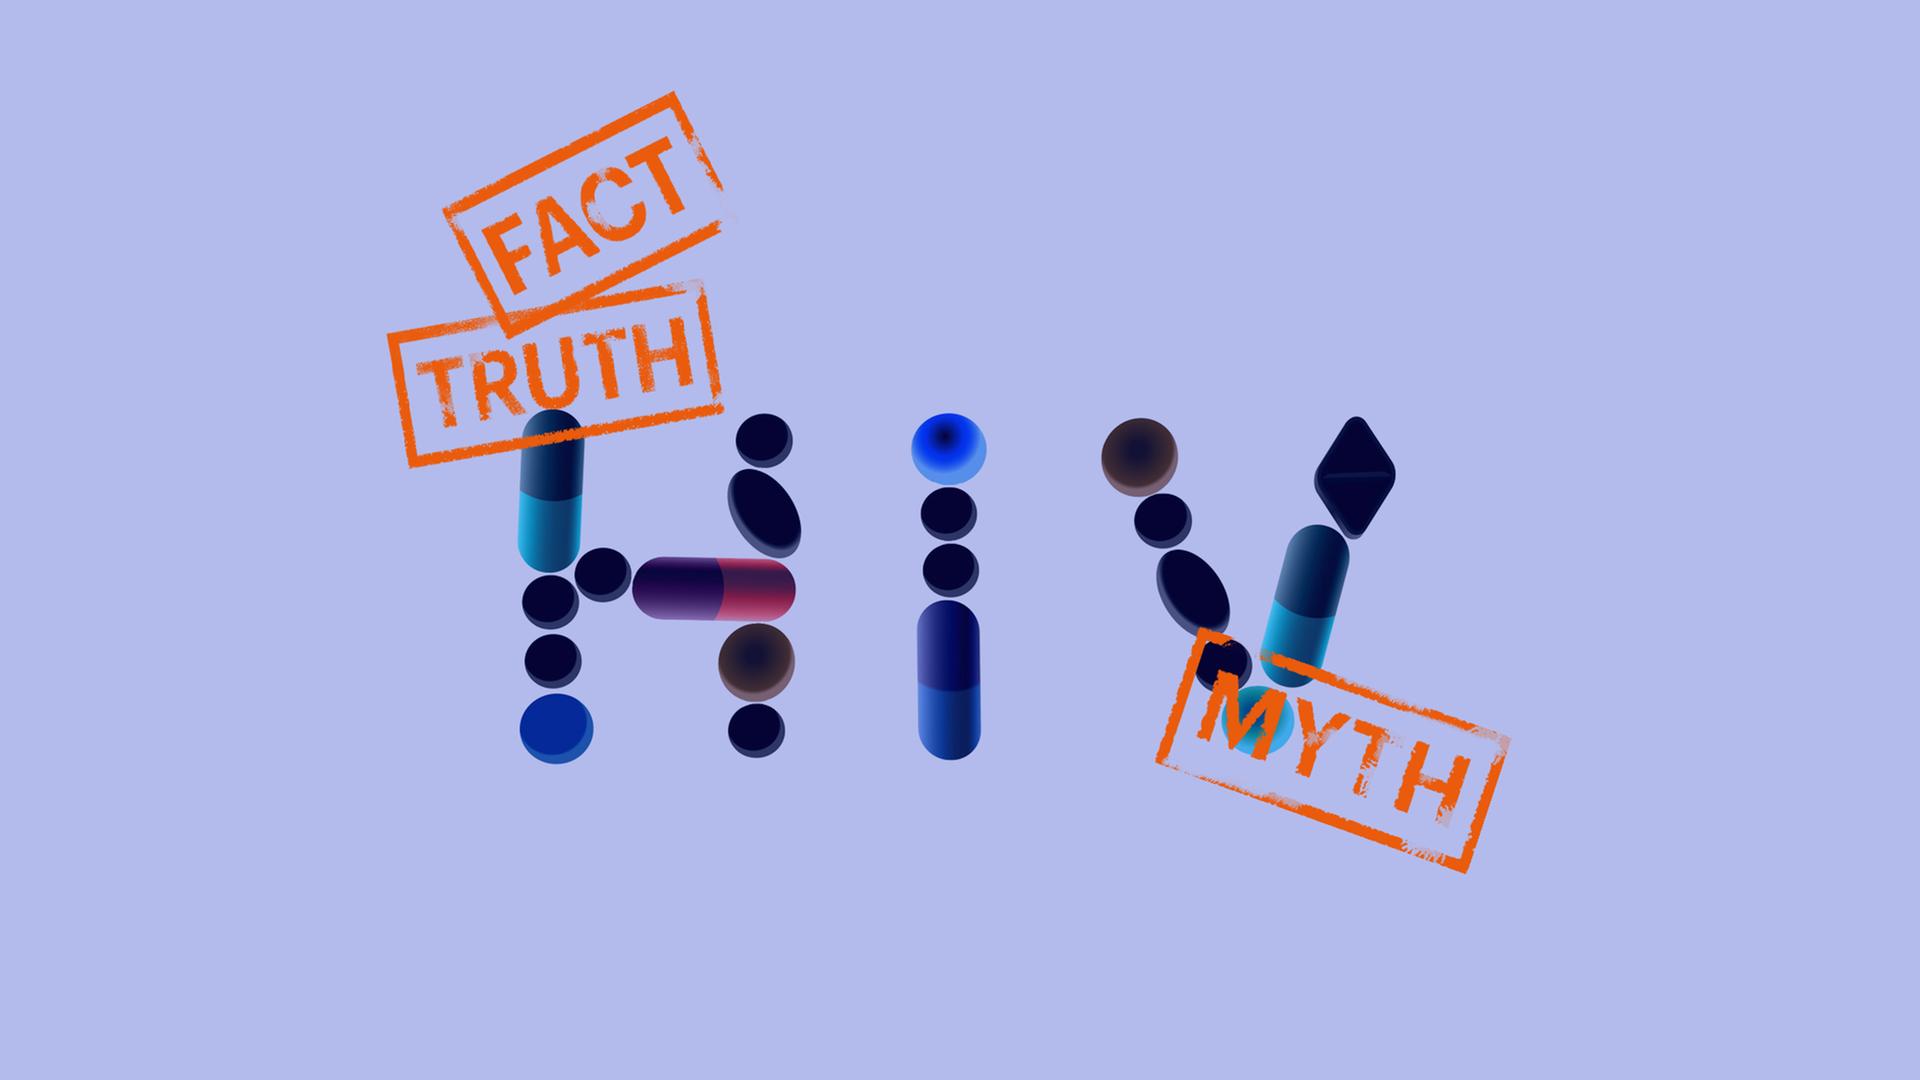 Blauer Hintergrund, zentral im Bild die Buchstaben HIV und Stempelabdrücke "Fact, Truth, Myth" - Fakten, Wahrheit, Mythen